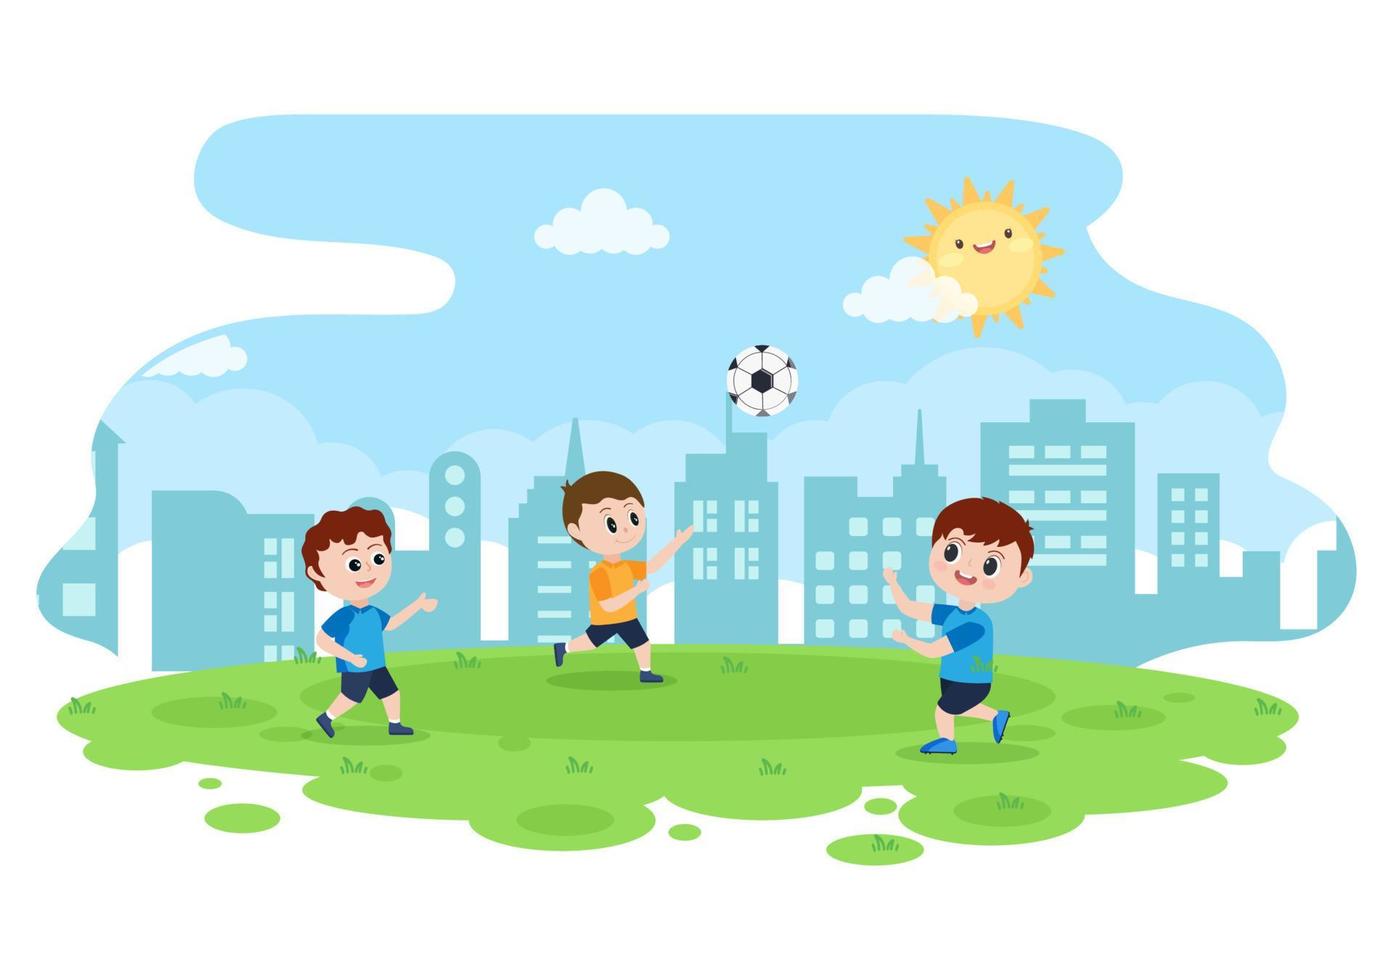 giocare a calcio con i ragazzi giocare a calcio indossare uniformi sportive vari movimenti come calciare, trattenere, difendere, parare e attaccare in campo. illustrazione vettoriale